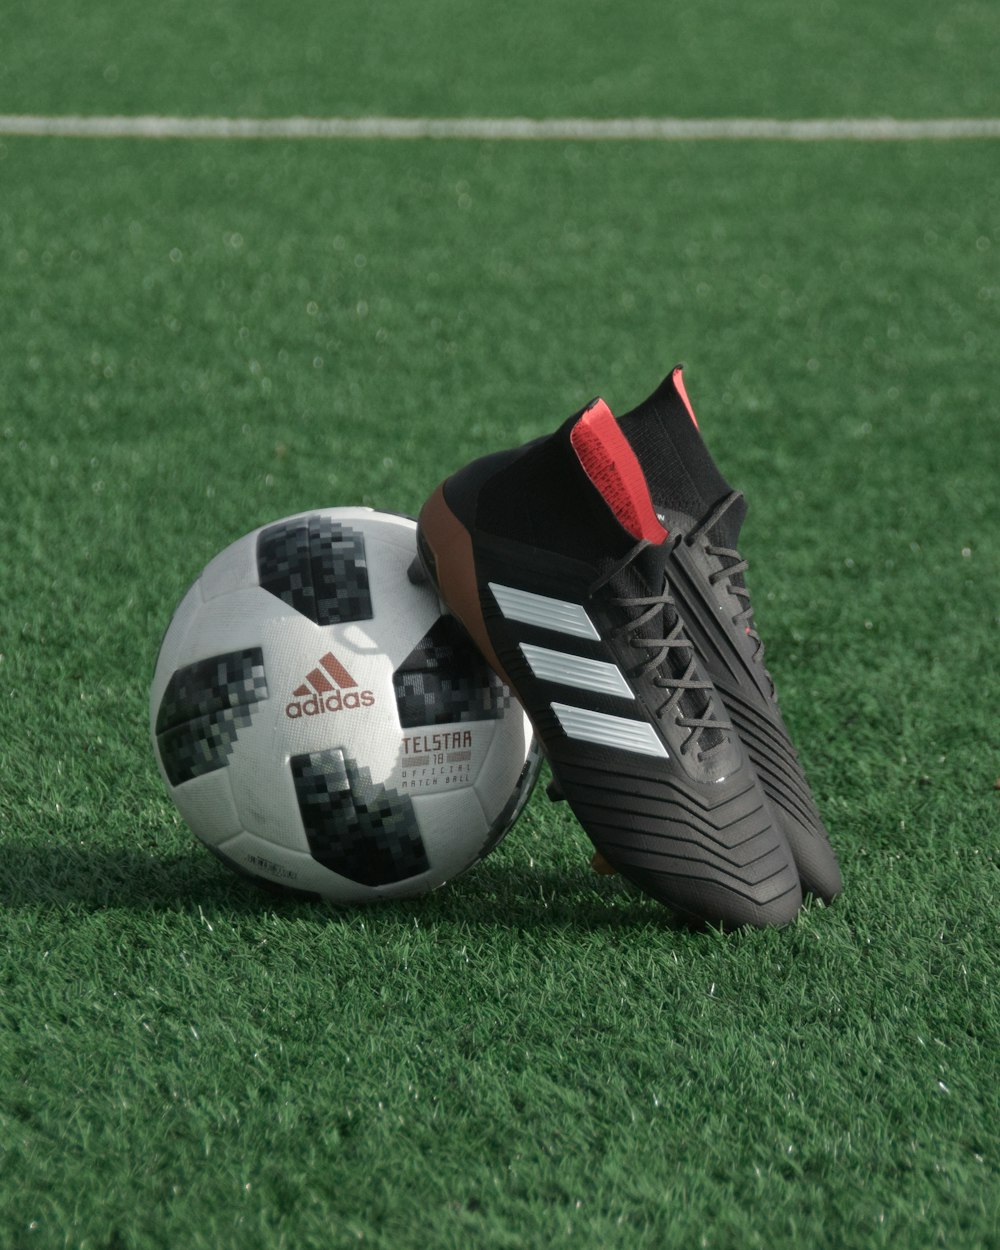 Schwarze adidas Stollen auf weißem und schwarzer adidas Fußball auf grünem Rasen